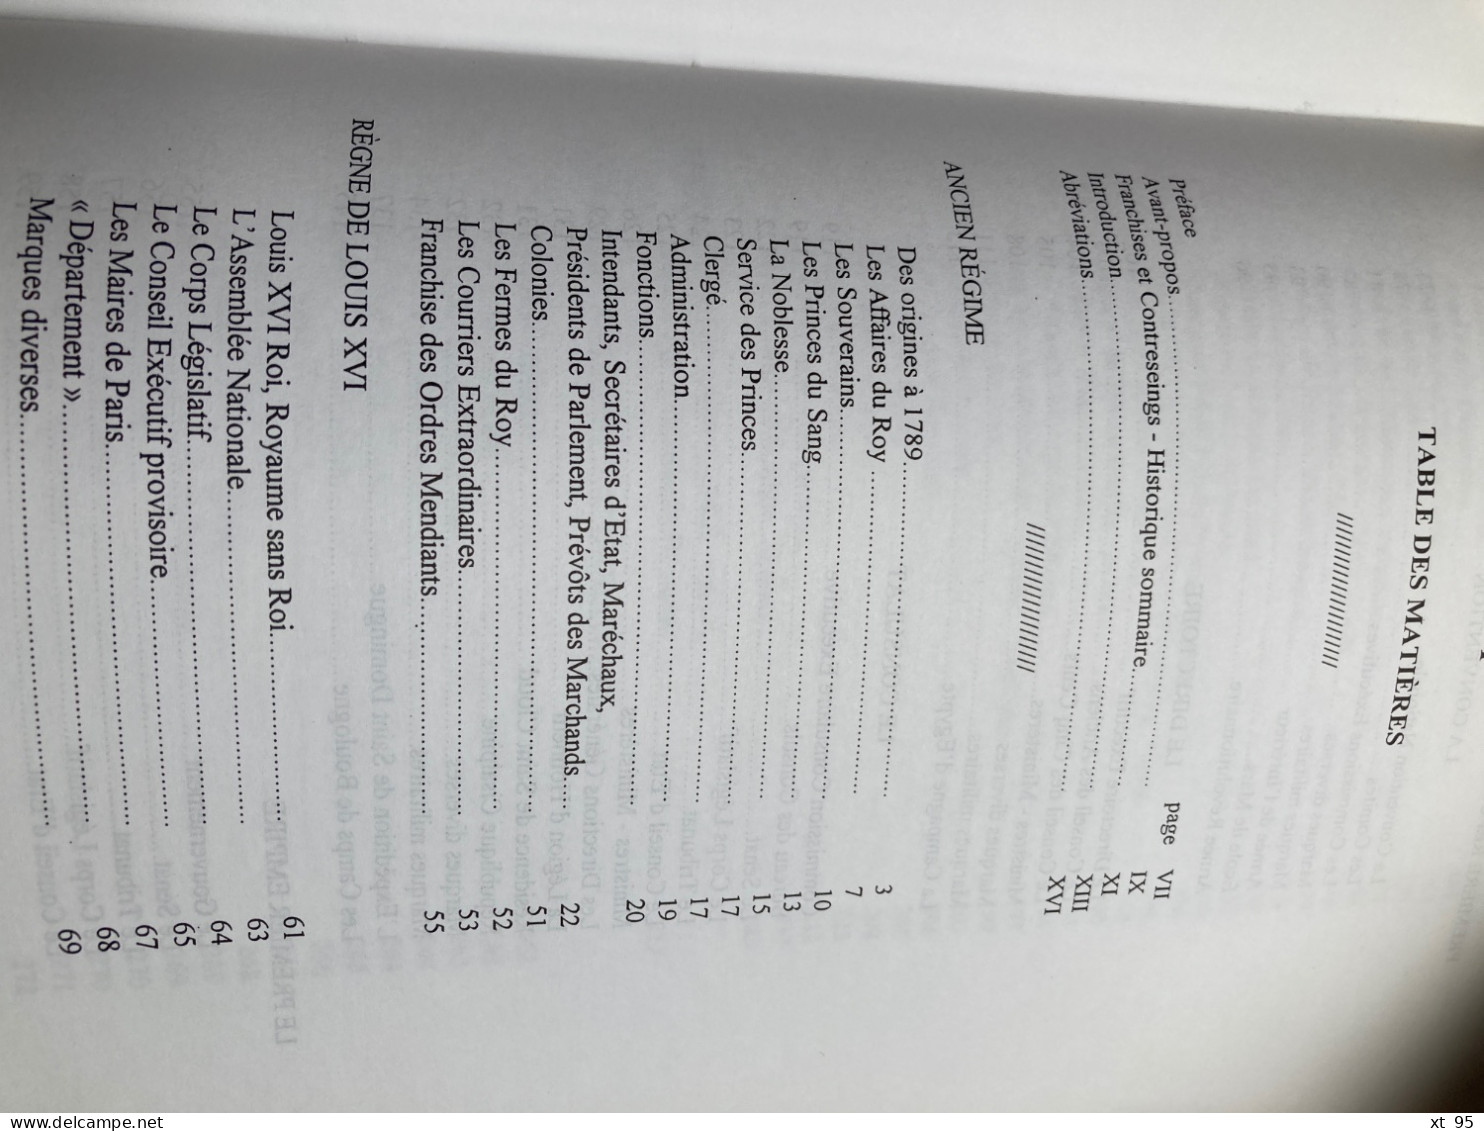 Bureaux Speciaux Franchises Contreseings - Tome 1 - Jean Senechal - 1998 - 440 pages